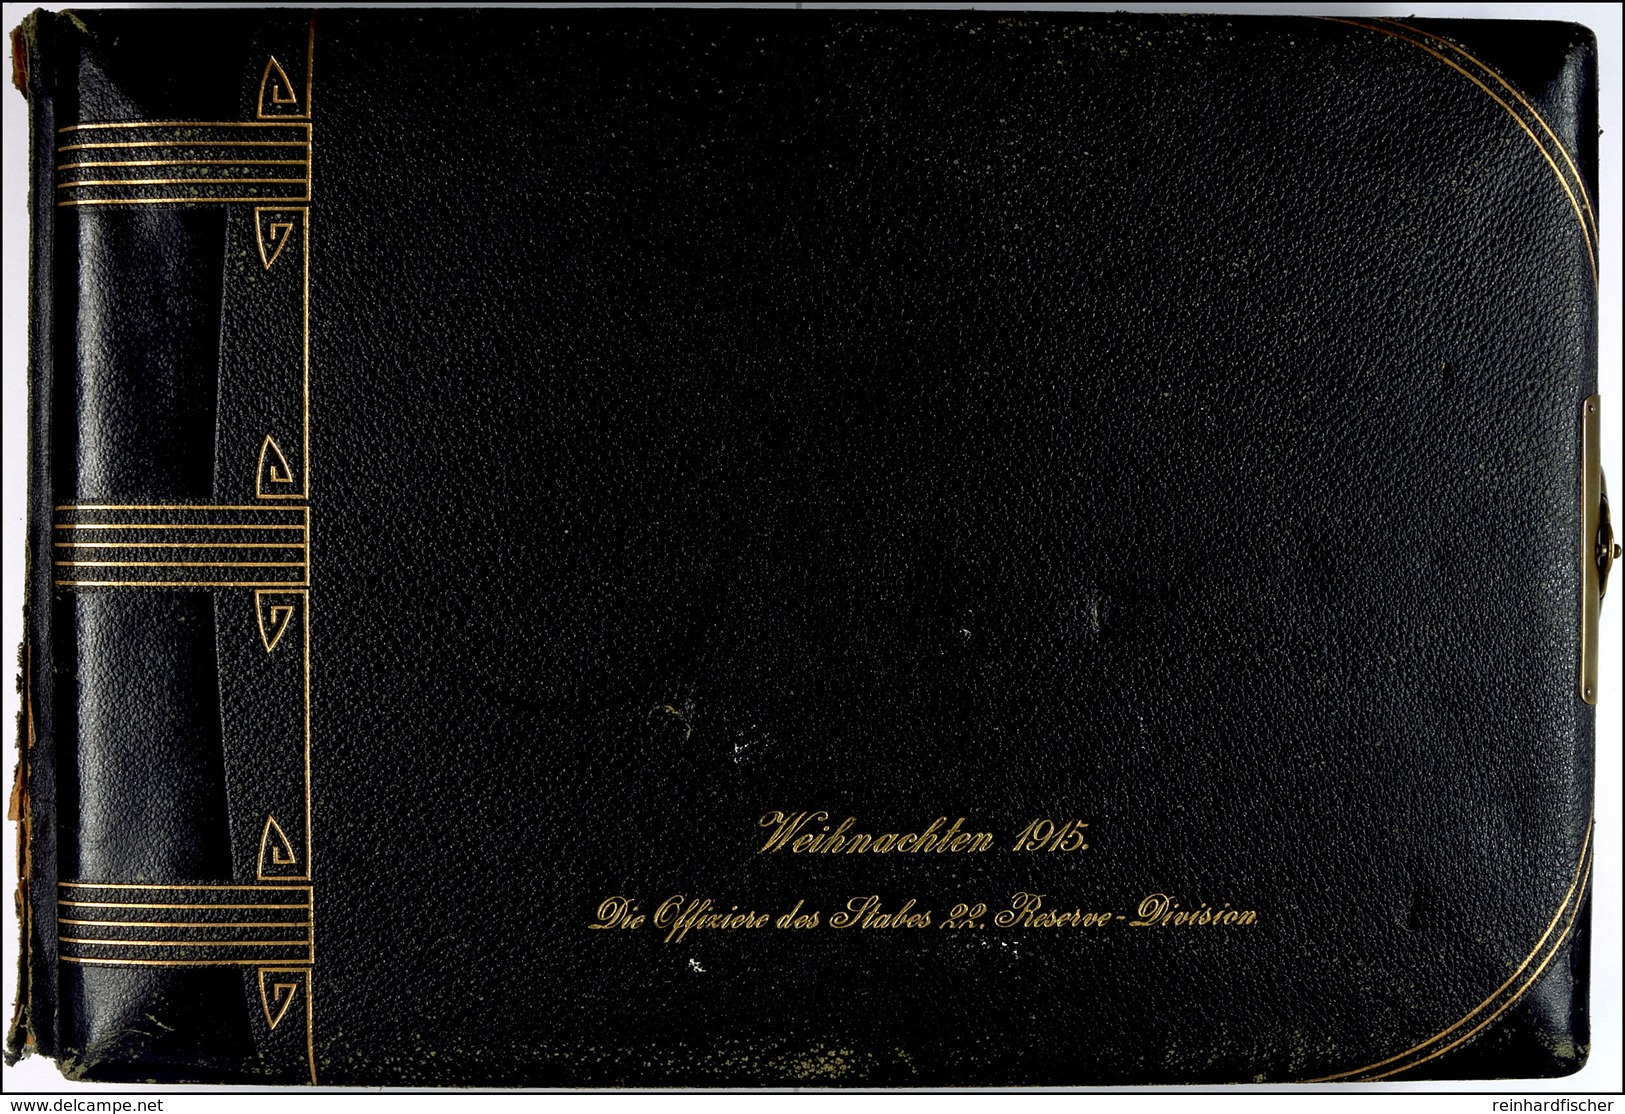 Fotoalbum Mit 79x Aufnahmen, Offiziere II. Weltkrieg, Album Schwarz Mit Goldschrift "Weihnachten 1915. Die Offiziere Des - Dokumente